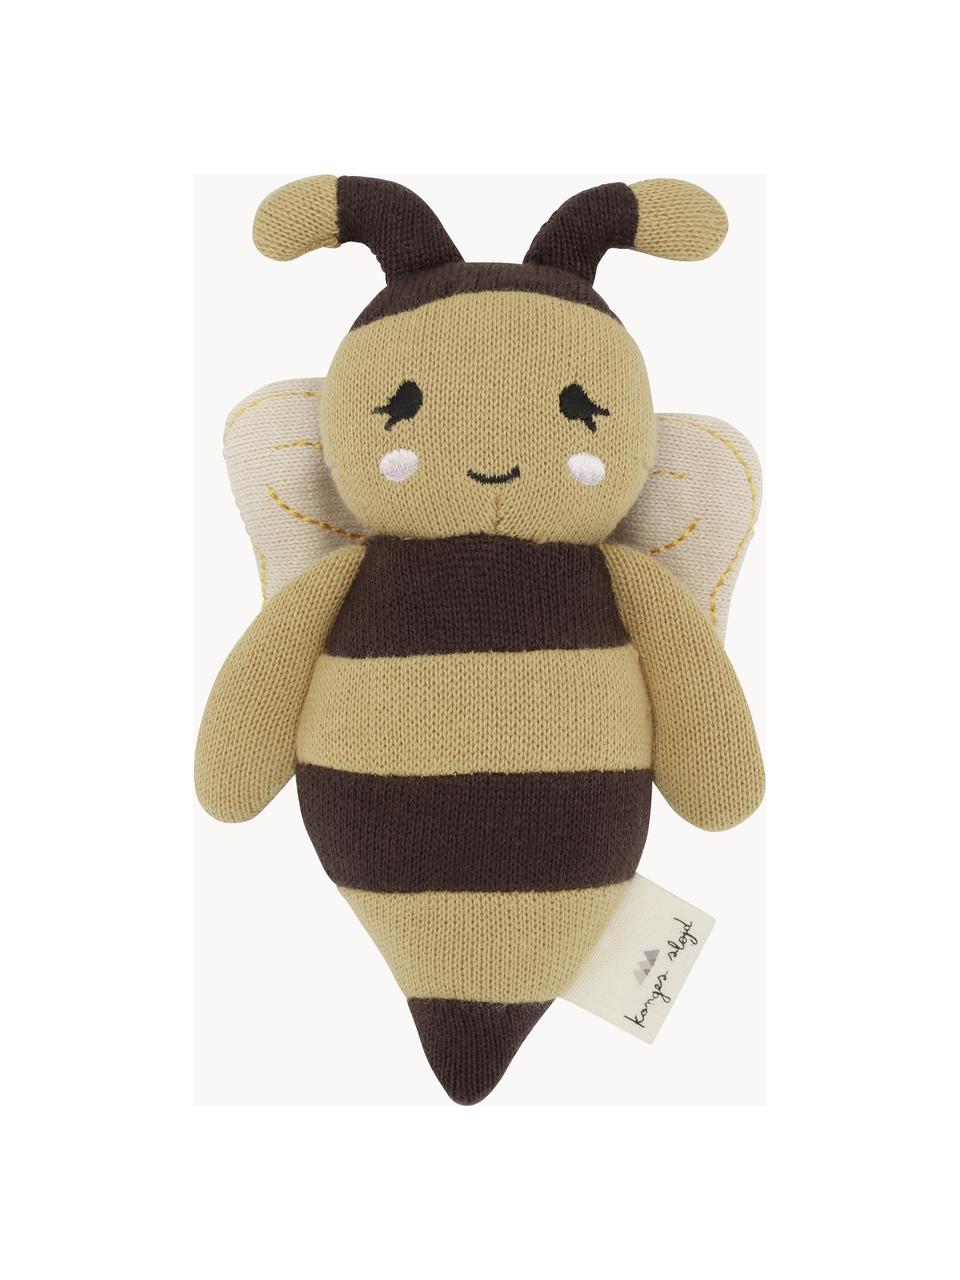 Bavlnená plyšová hračka Bee, Okrová, tmavohnedá, D 15 cm